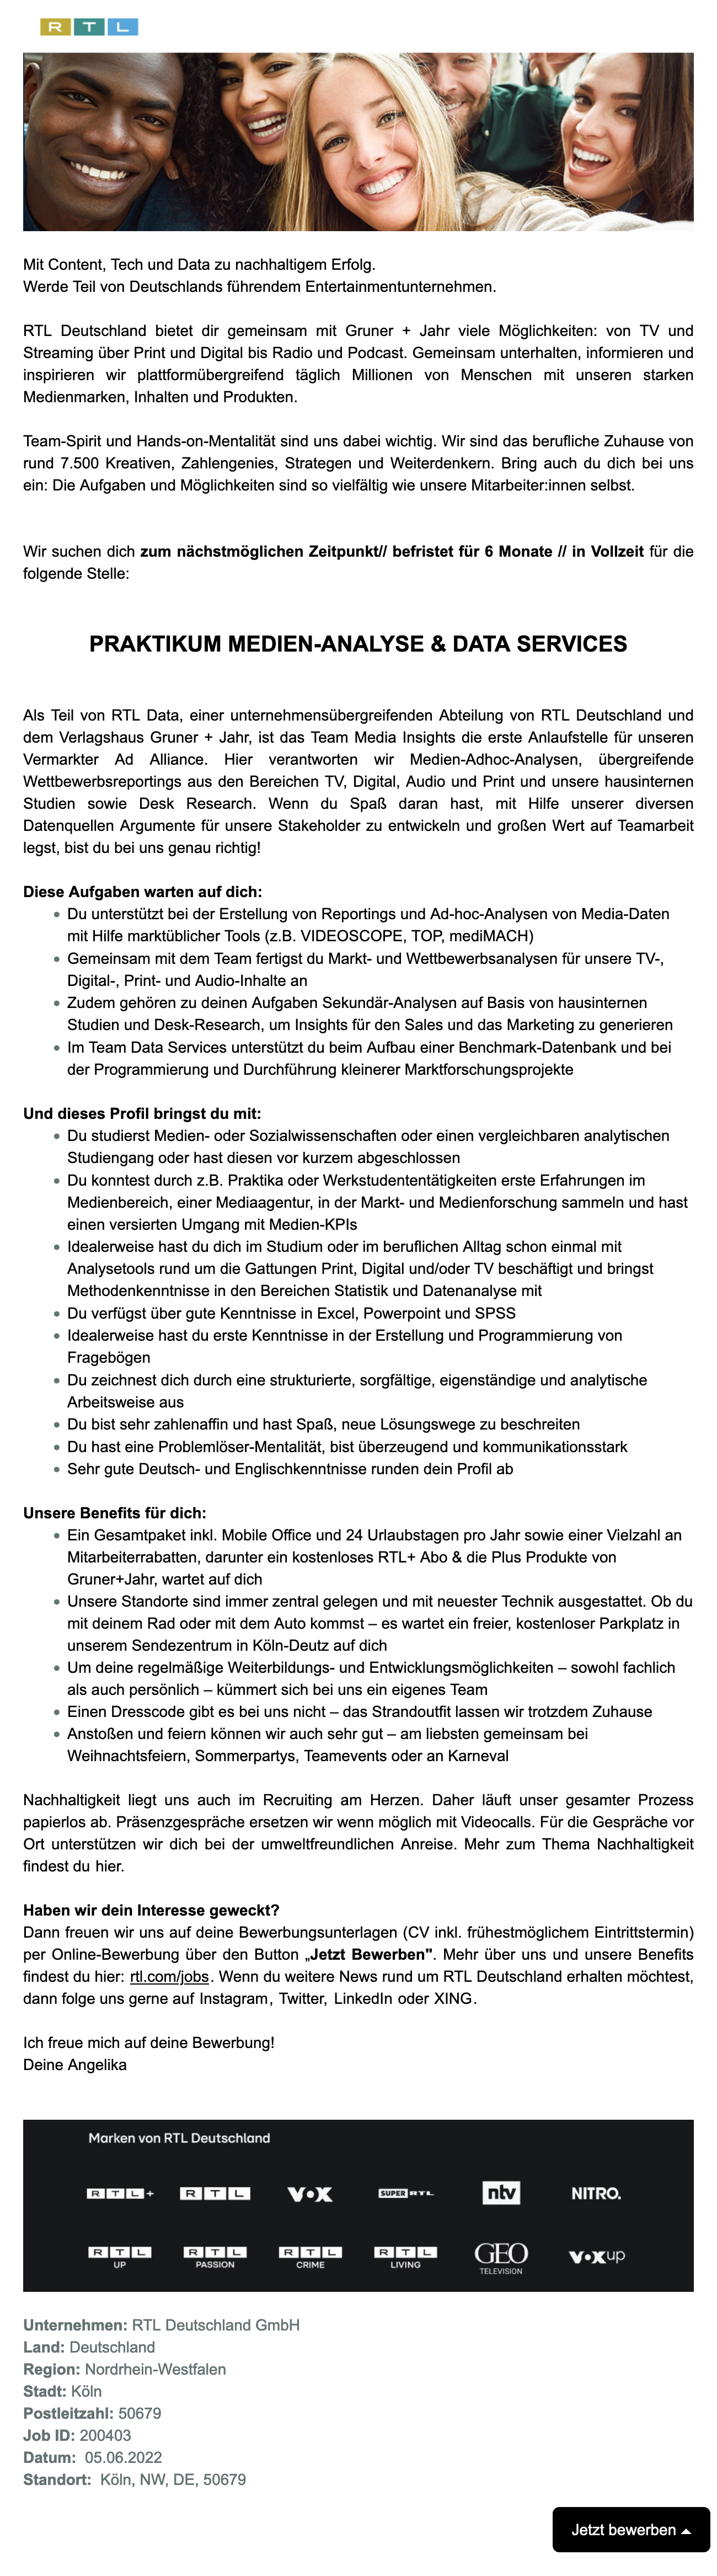 Praktikum Medien-Analyse und Data Services (RTL Deutschland)